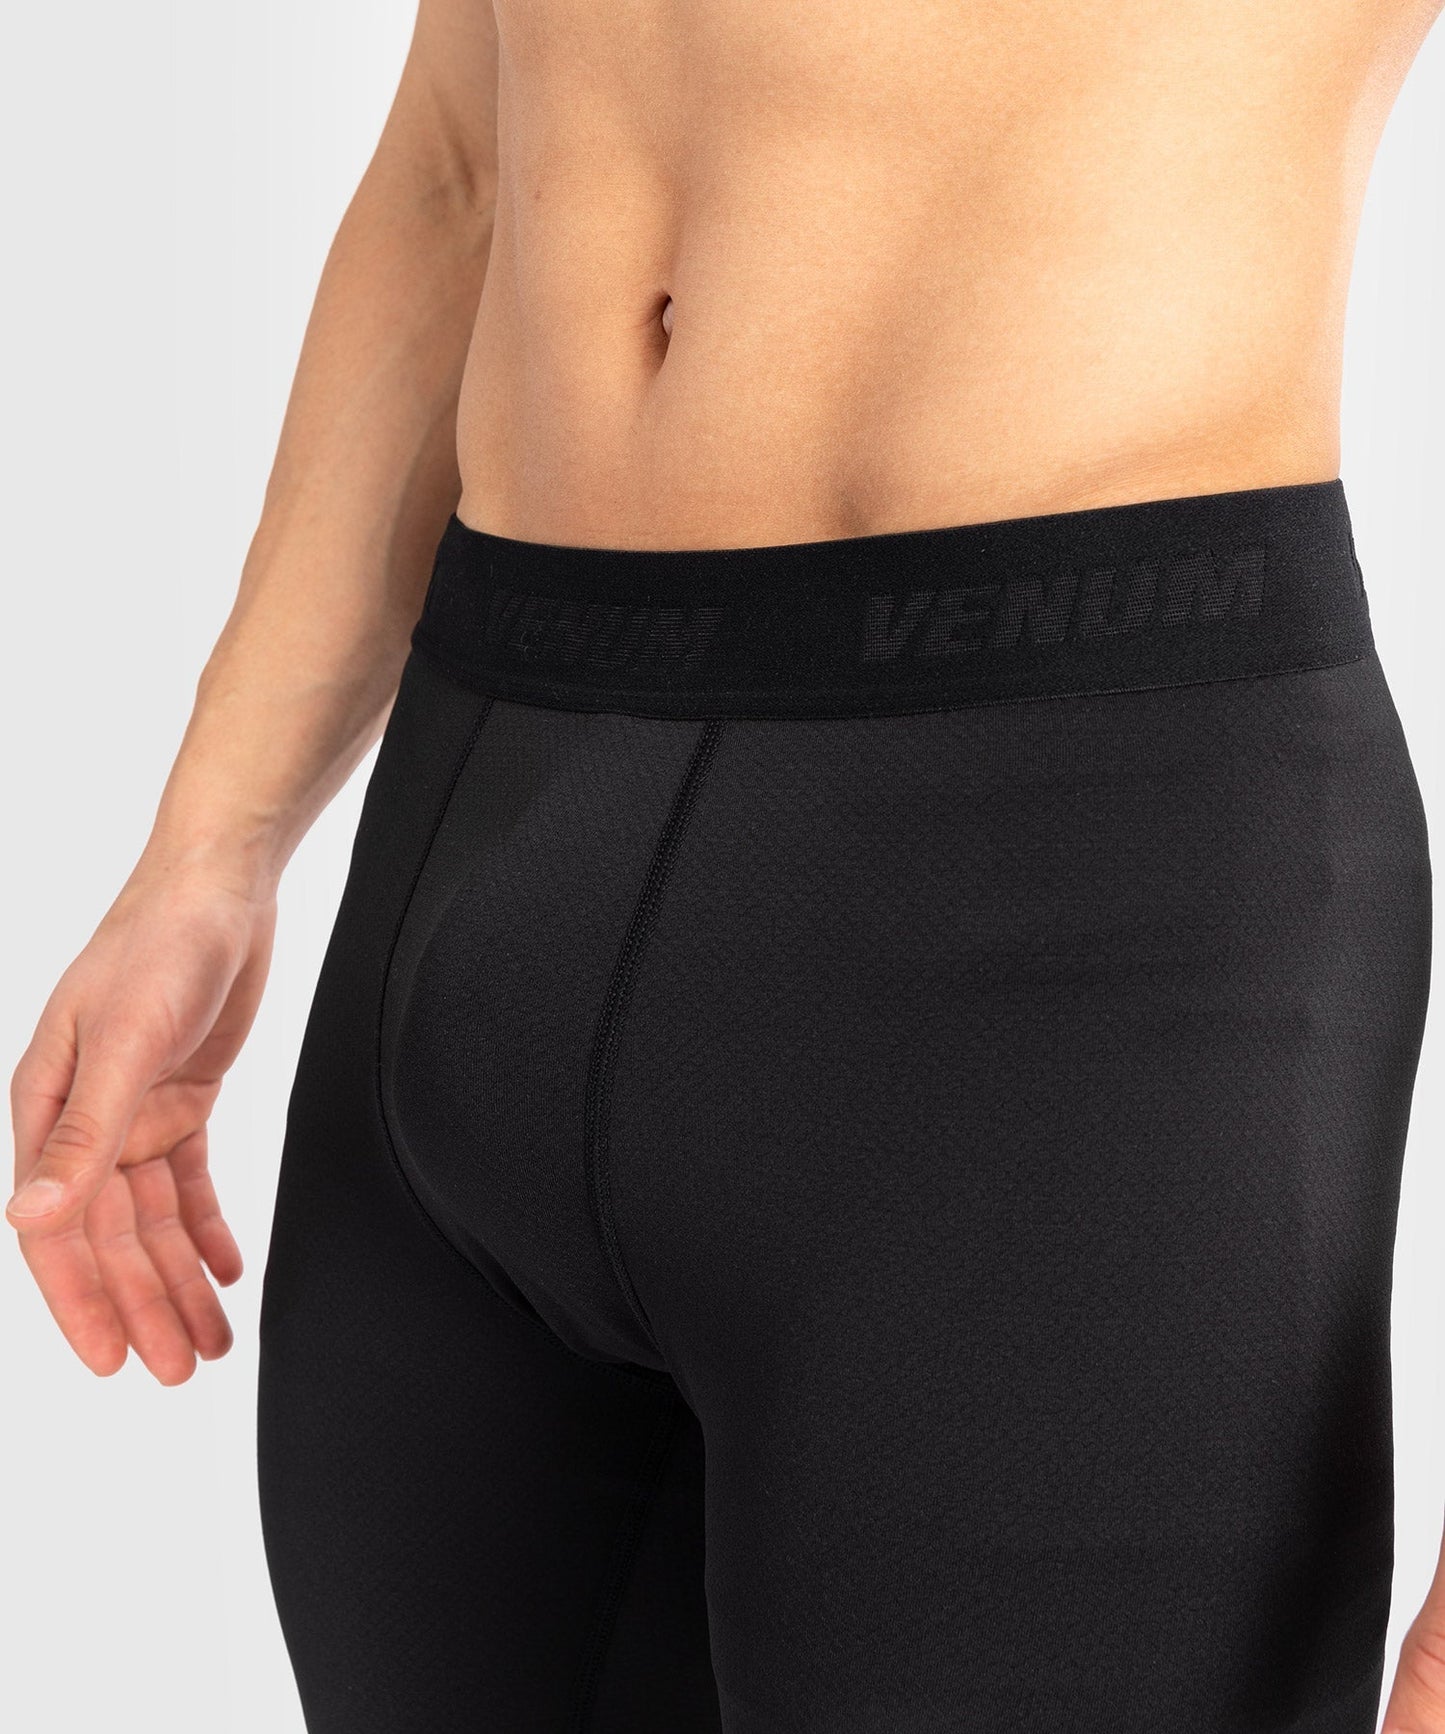 Pantalon de compression pour hommes Venum Contender - Noir/Blanc - Pantalons